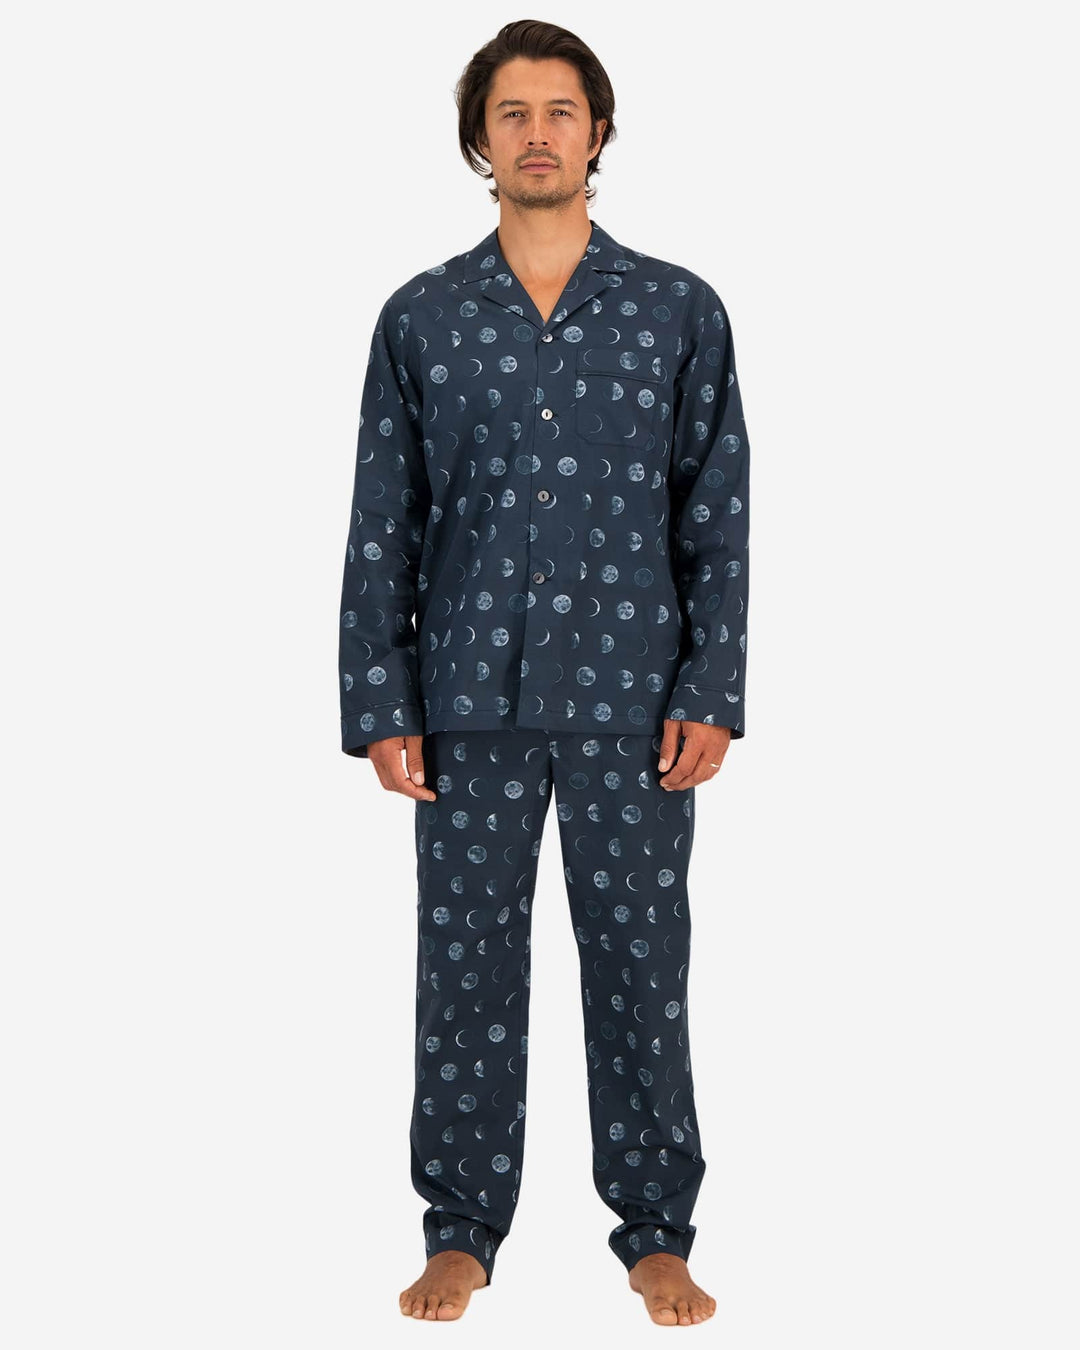 Blue matching pyjamas couples